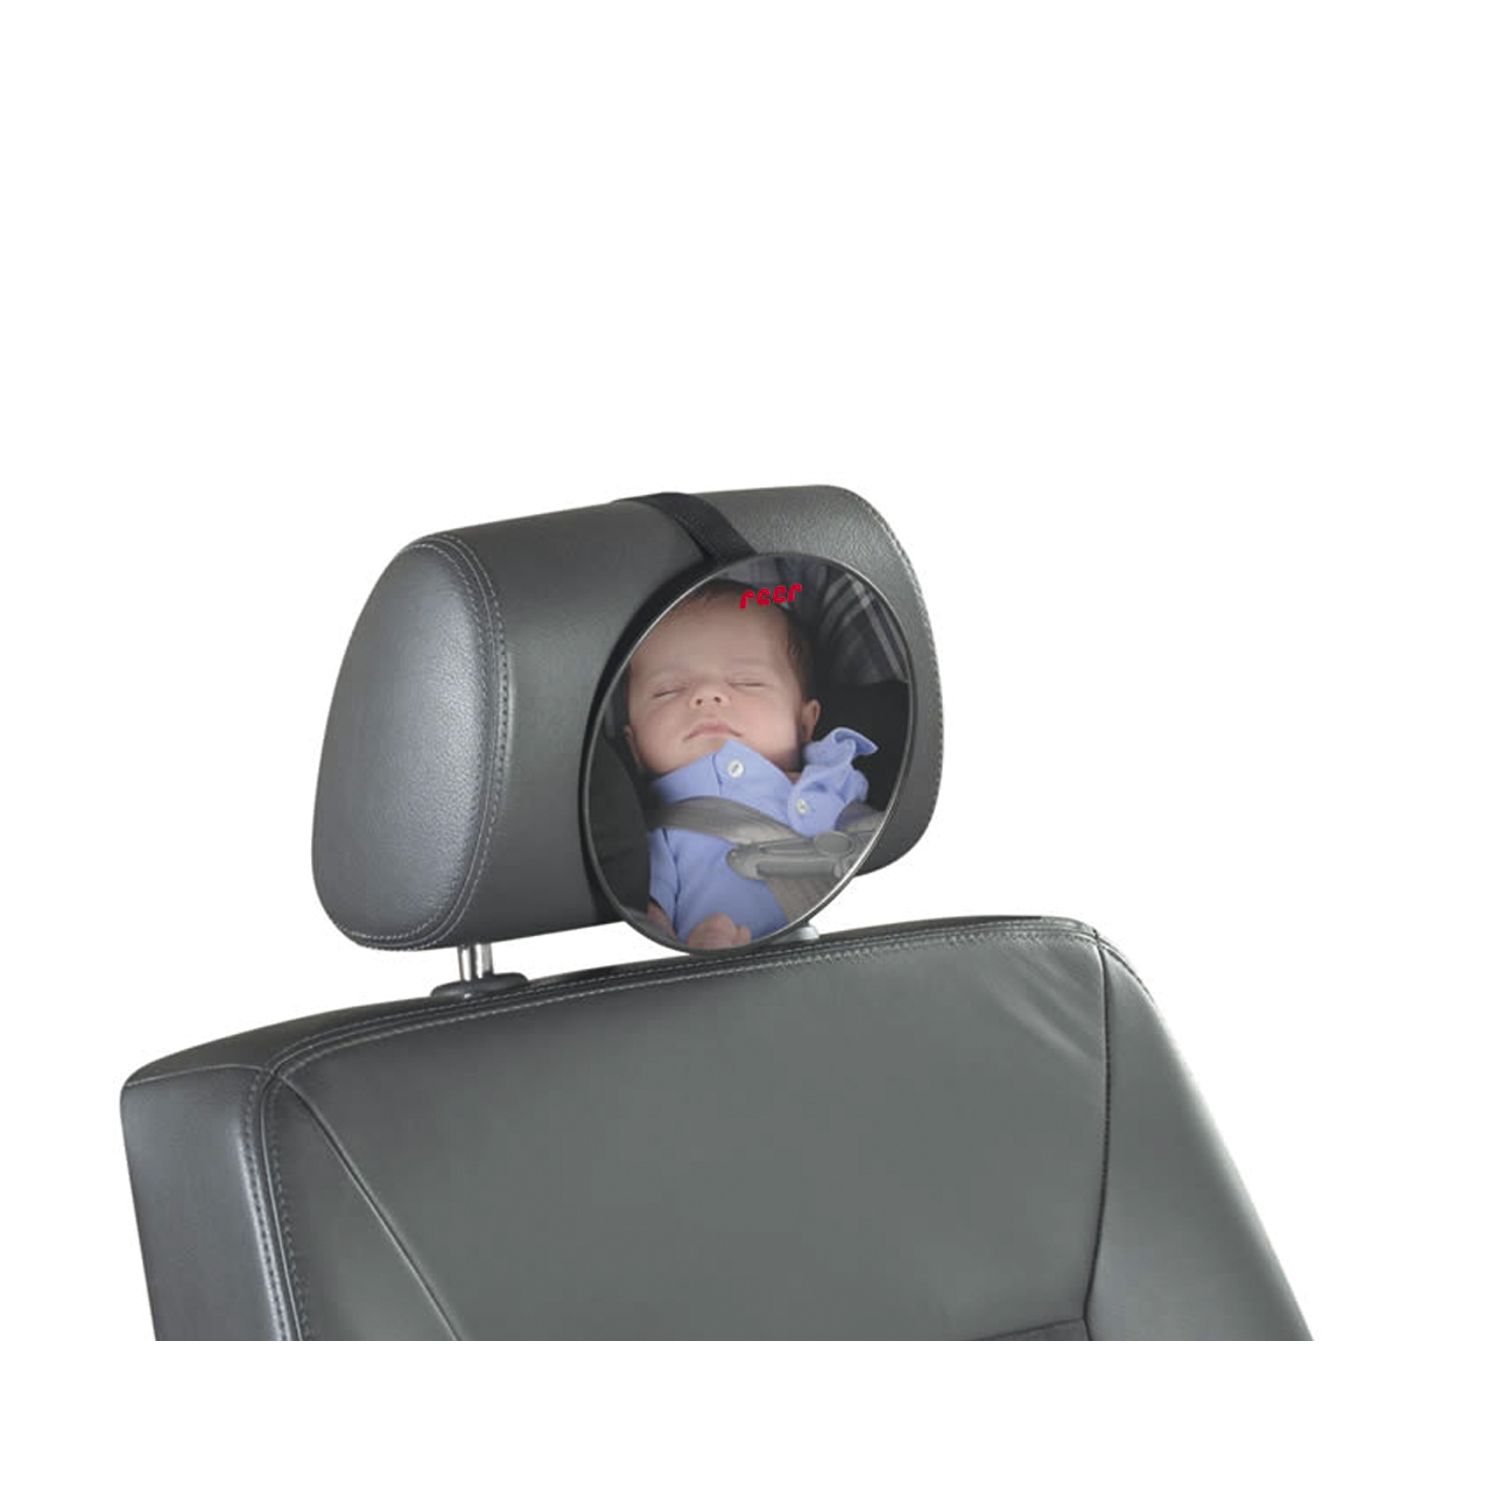 REER Baby Rücksitzspiegel SafetyView für mehr Sicherheit im Auto,  bruchsicher, schwarz, 1 Stück - vasalat